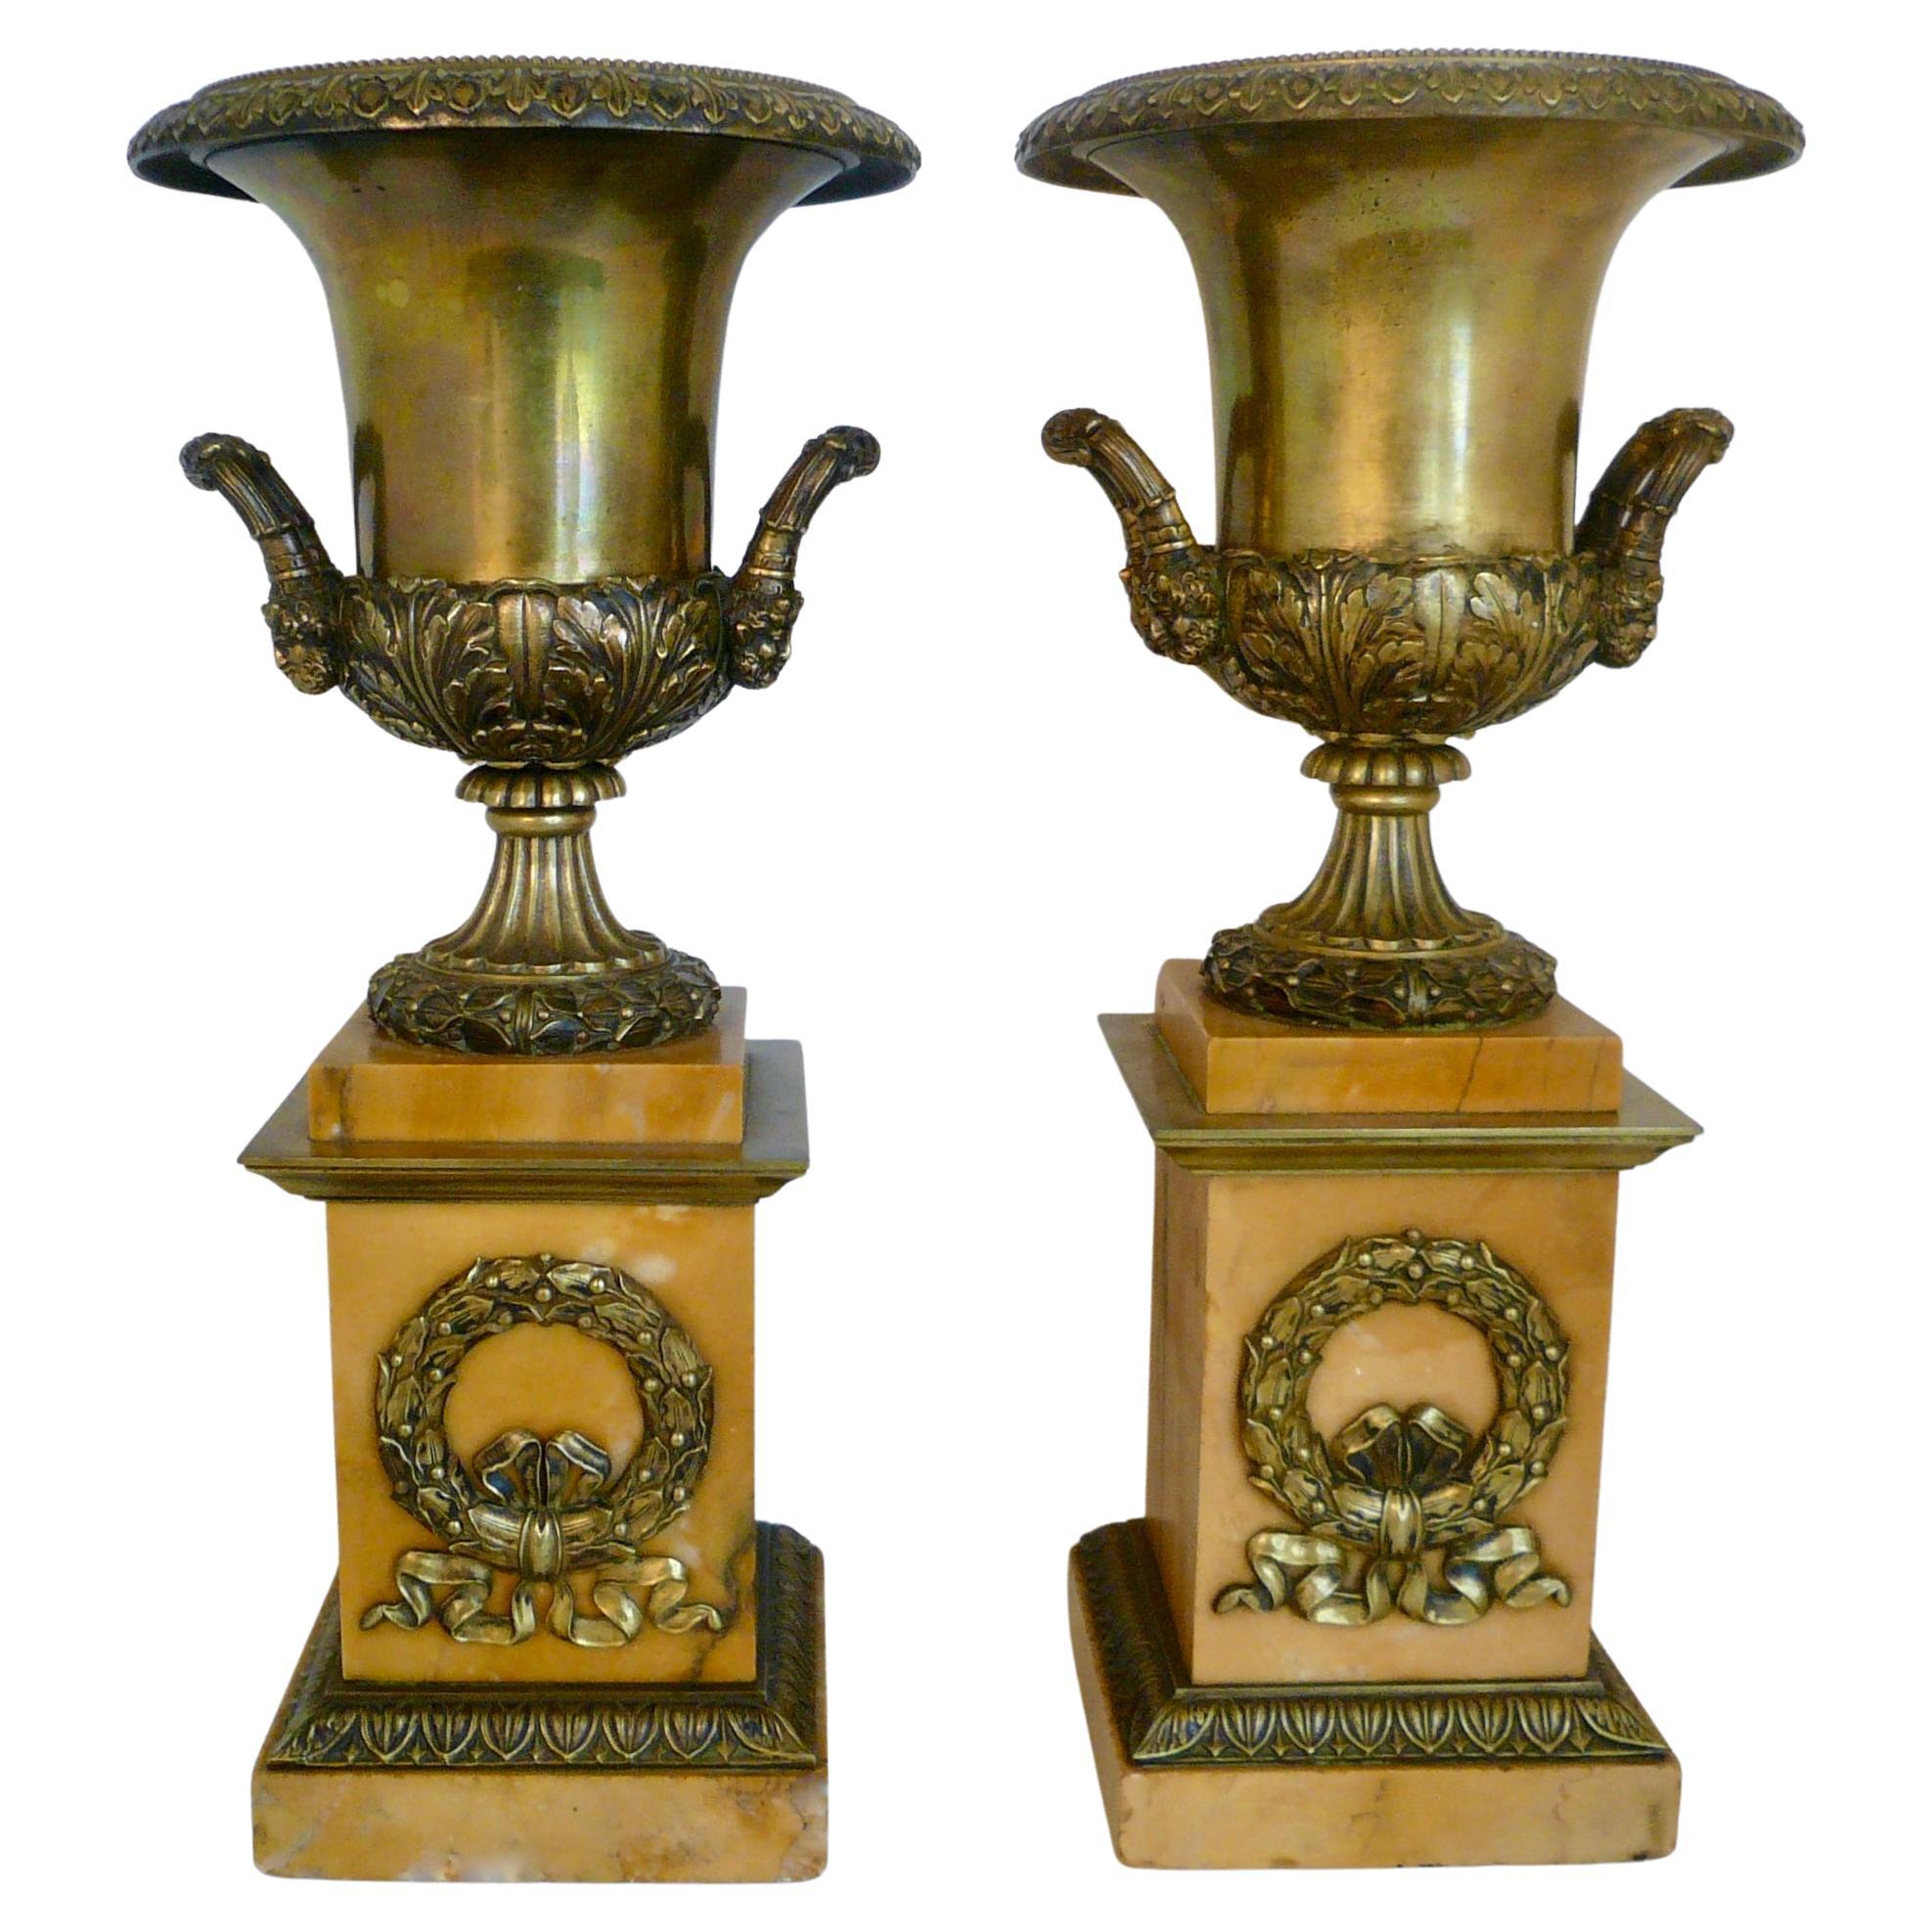 Paire d'urnes en bronze et marbre en forme de campane de l'Empire français